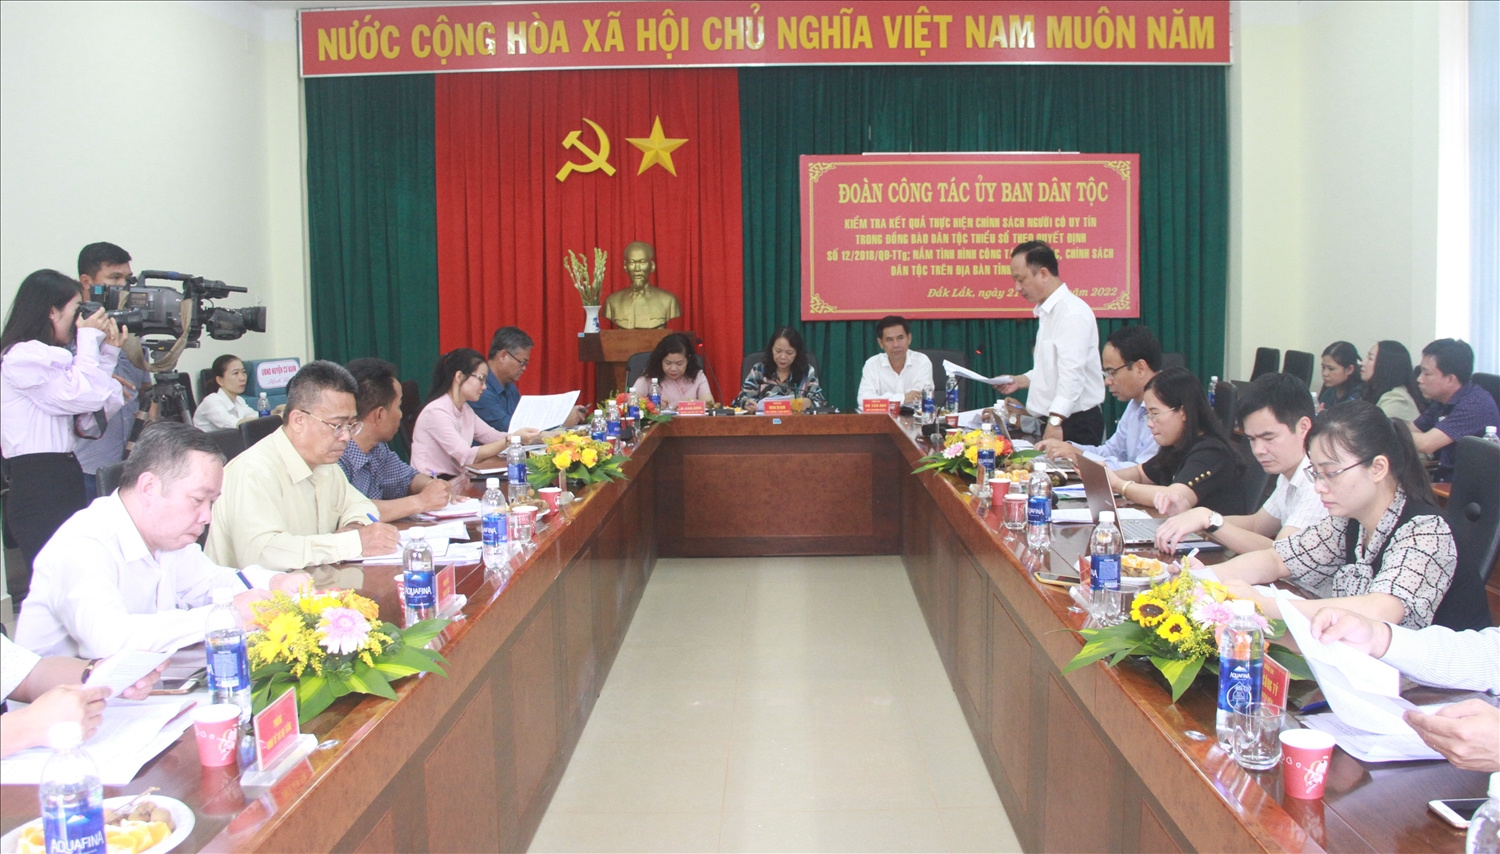 Thứ trưởng, Phó Chủ nhiệm Ủy ban Dân tộc kiểm tra chính sách Người có uy tín tại tỉnh Đắk Lắk